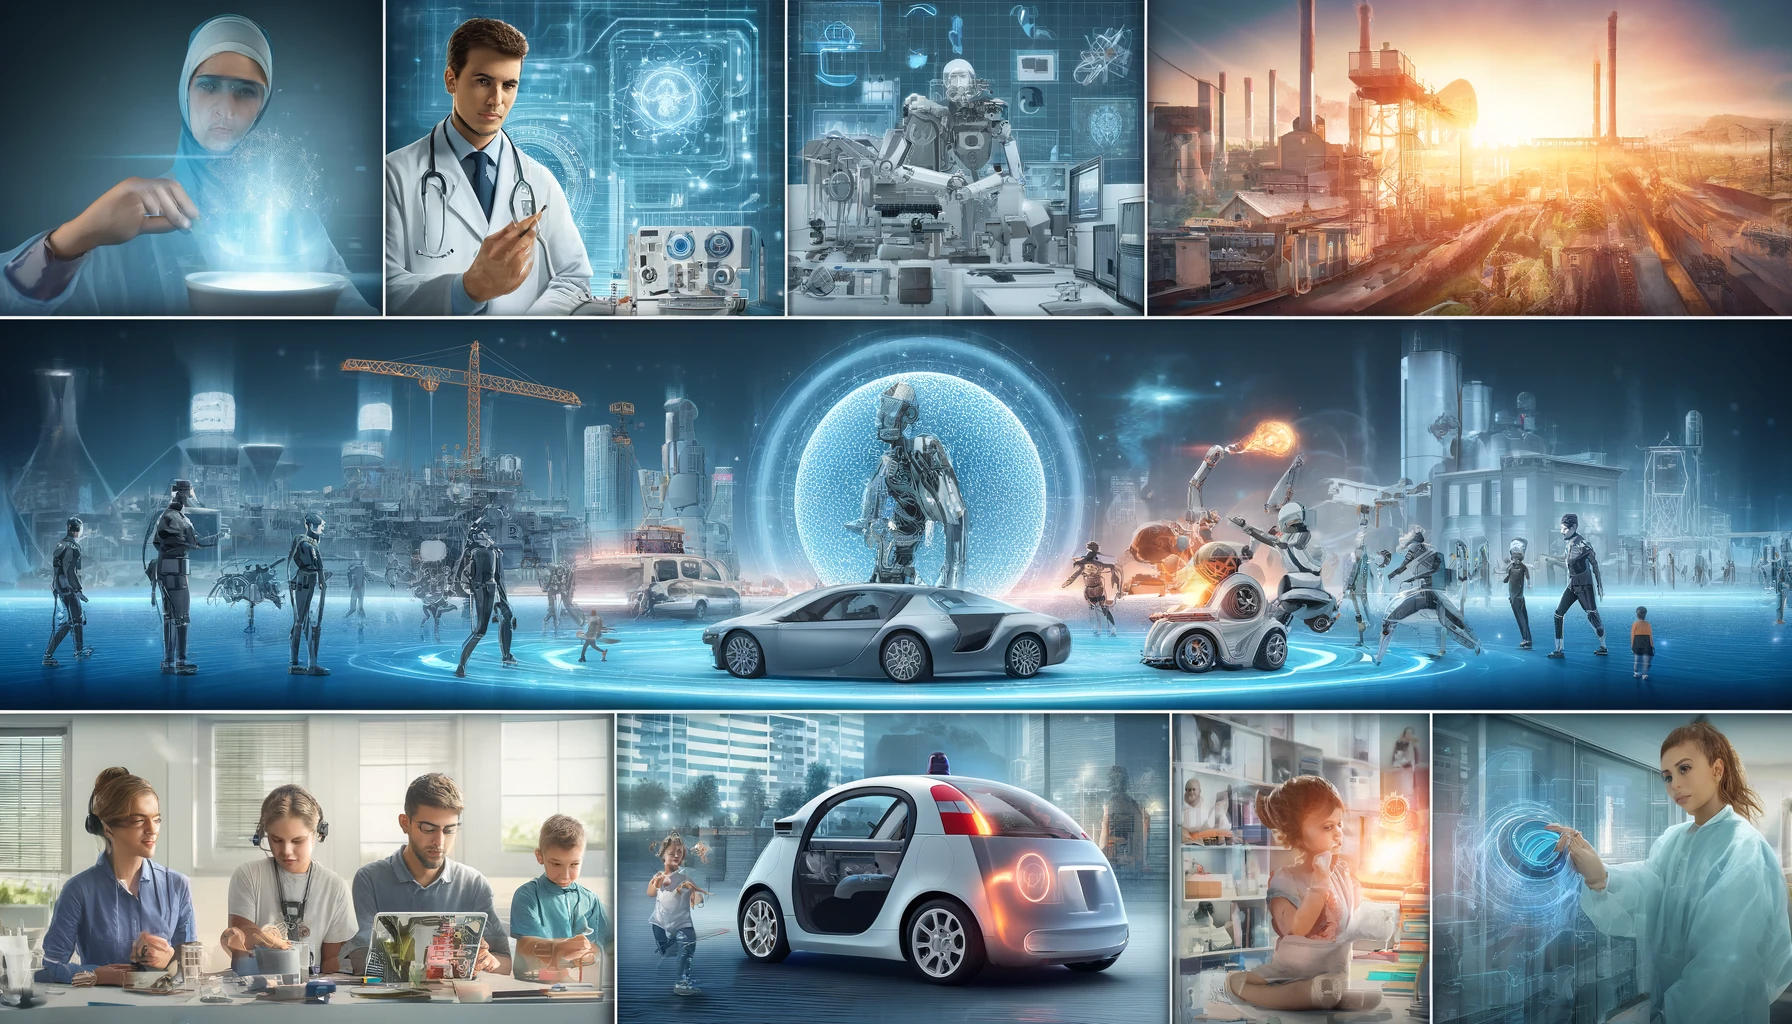 Representación de tendencias en inteligencia artificial con escenas de salud, automatización, vehículos autónomos, domótica y educación personalizada. Incluye a nombre Josvim, junto con la frase Innovaciones en Inteligencia Artificial.